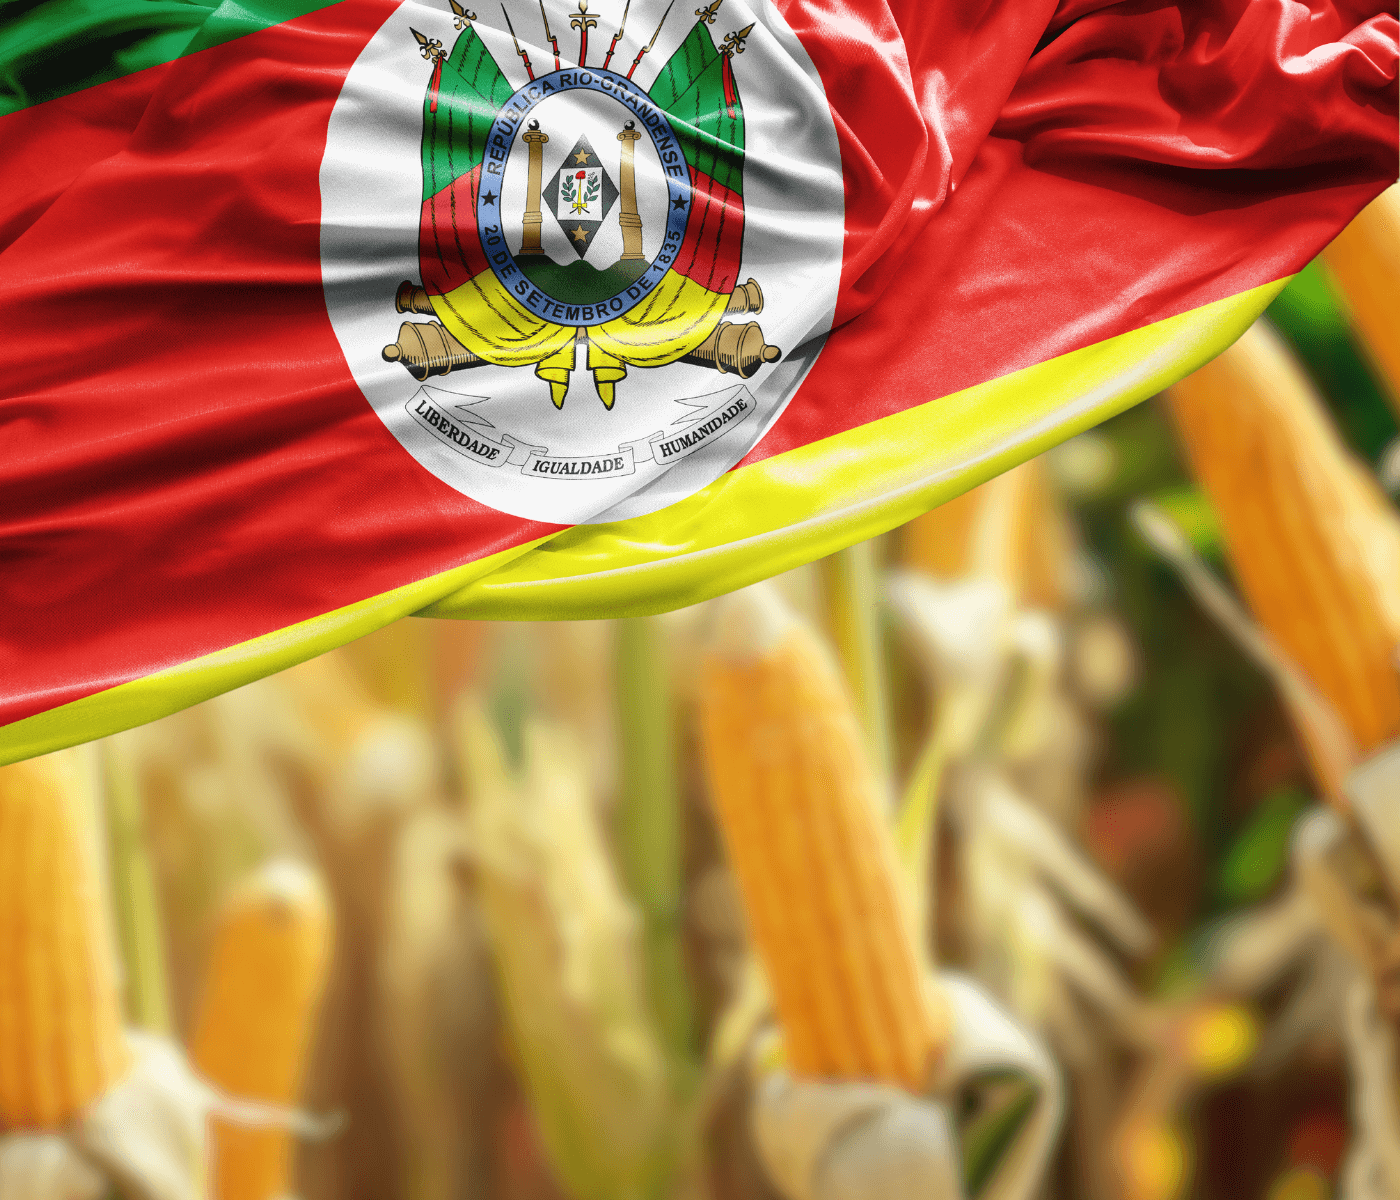 Indústrias suinícolas do RS buscam ampliar corredores de importação de milho